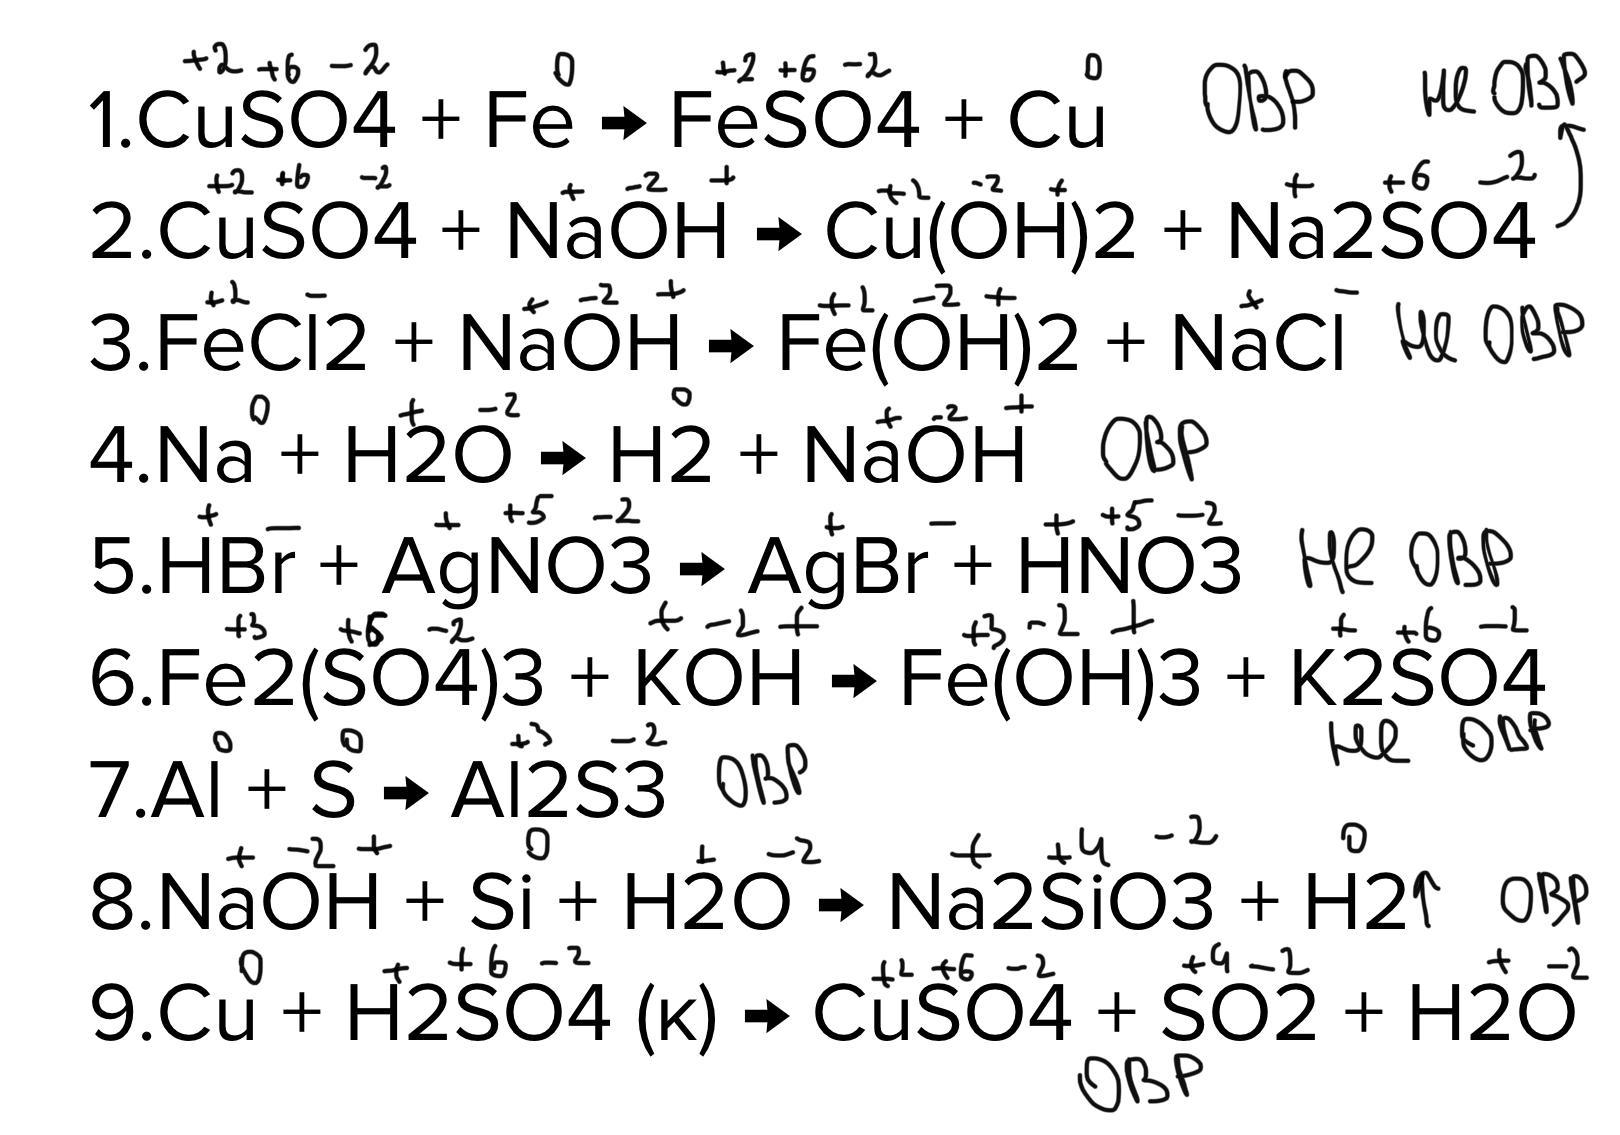 Степень окисления железа в fe2 so4 3. Расставить степень окисления cuso4. Fe2 so4 3 степень окисления каждого элемента. Определить степень окисления feso4. Feso4 степень окисления каждого.